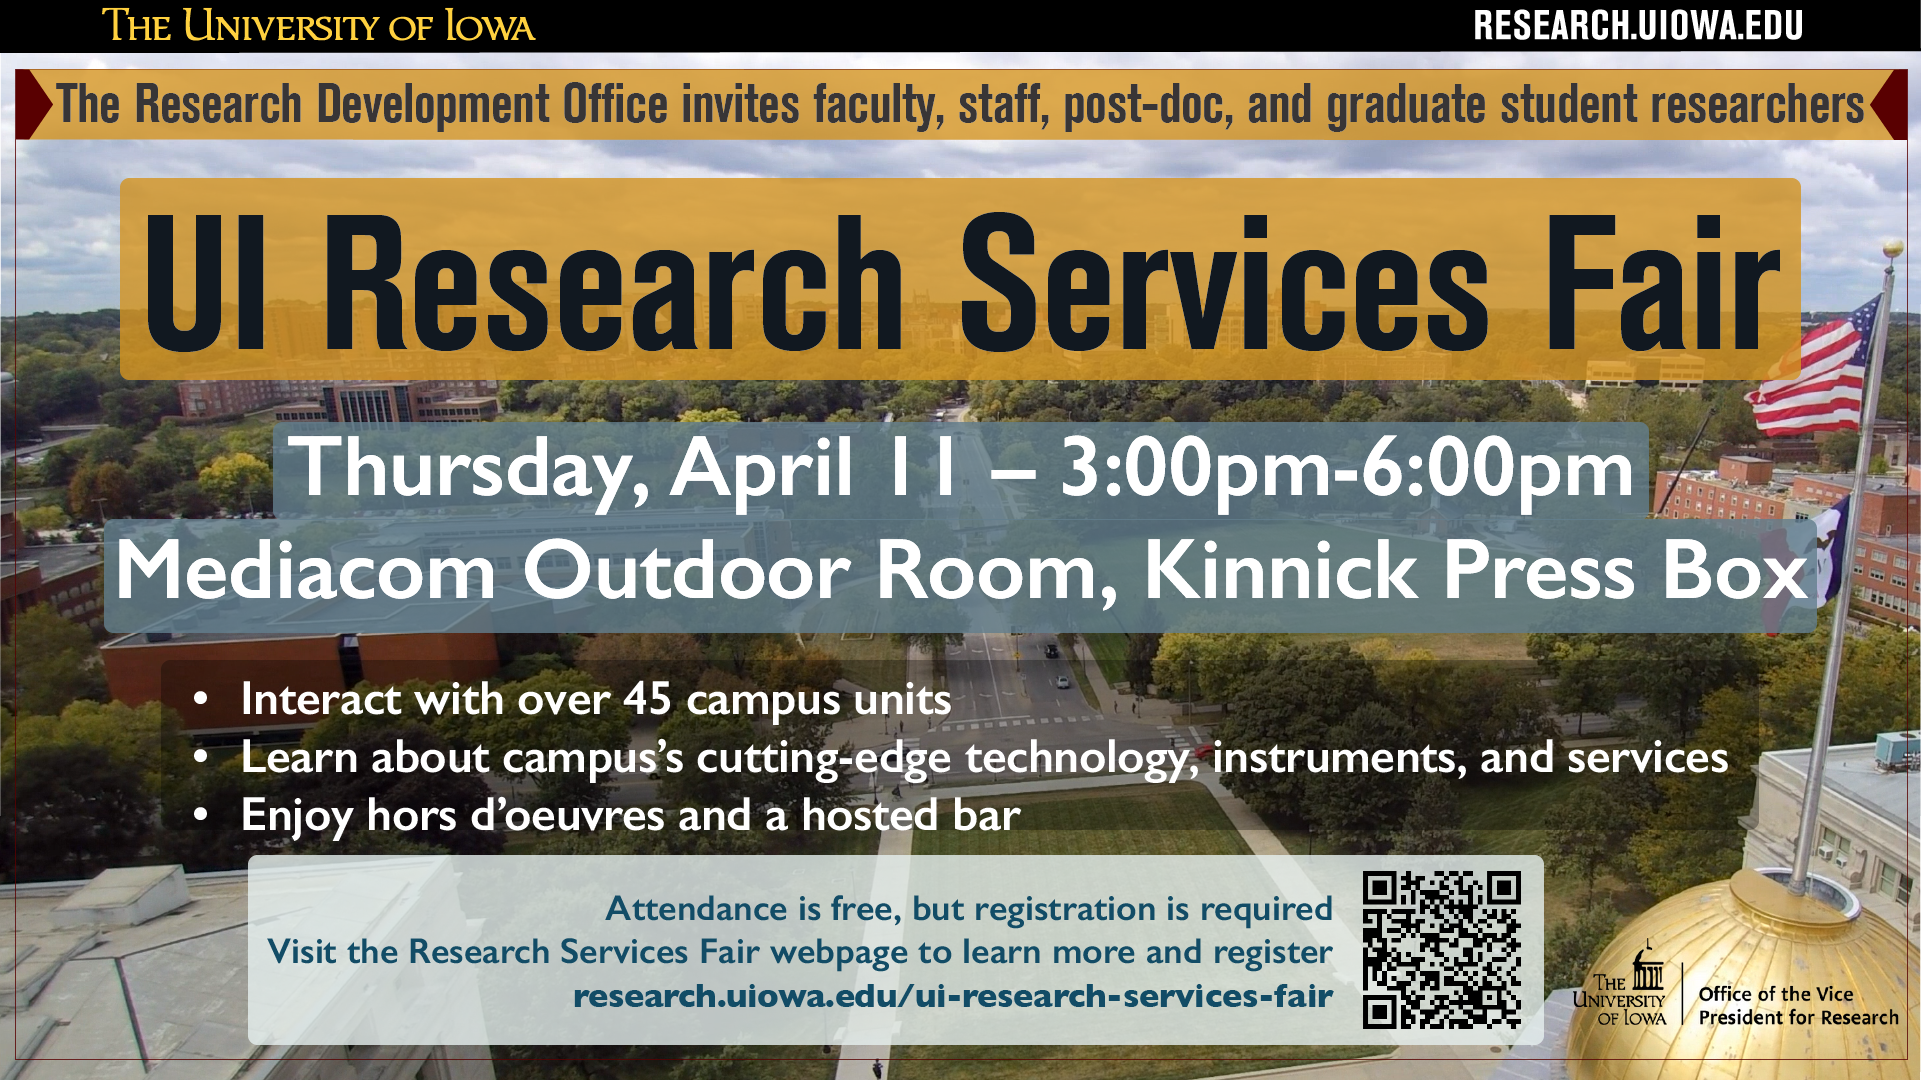 UI Research Services Fair Thursday, April 11, 2019